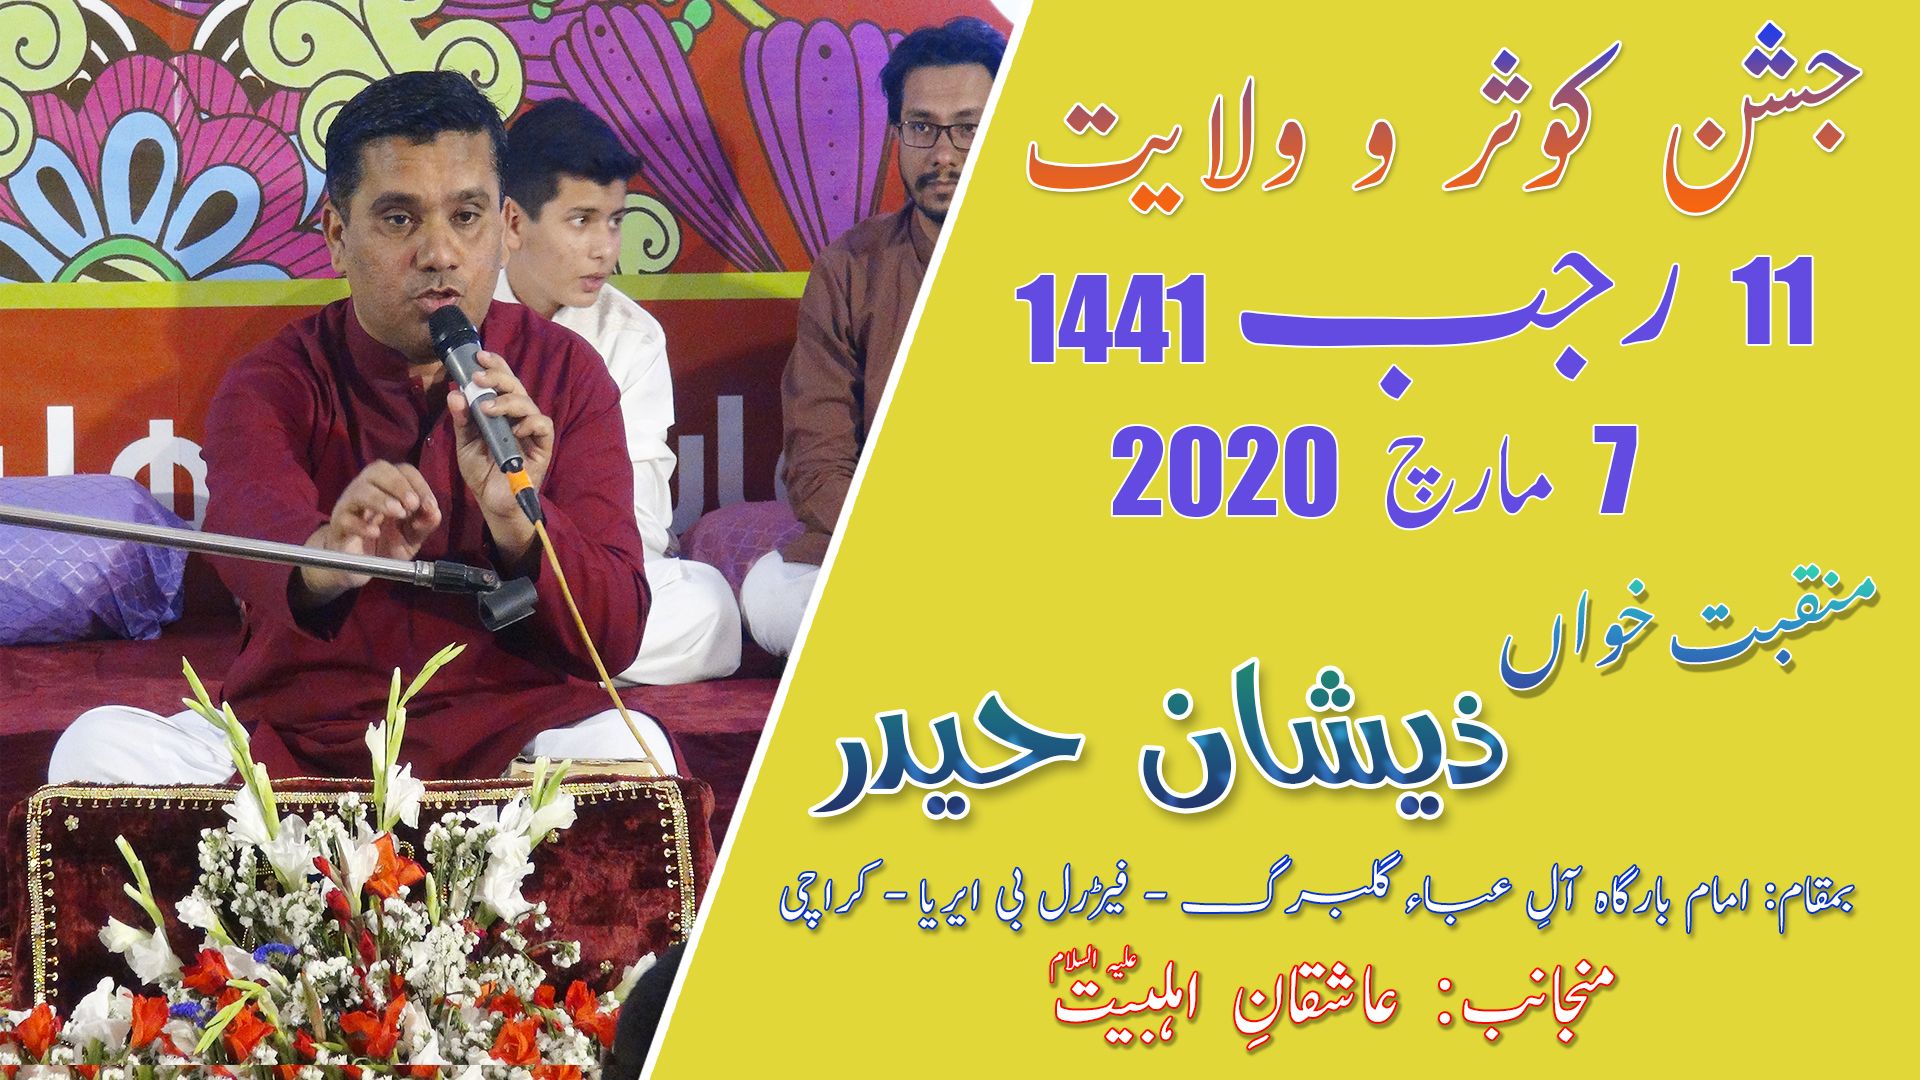 Manqabat | Zeeshan Haider | Jashan-e-Kausar - 11 Rajab 2020 - Imam Bargah Aleyaba - Karachi